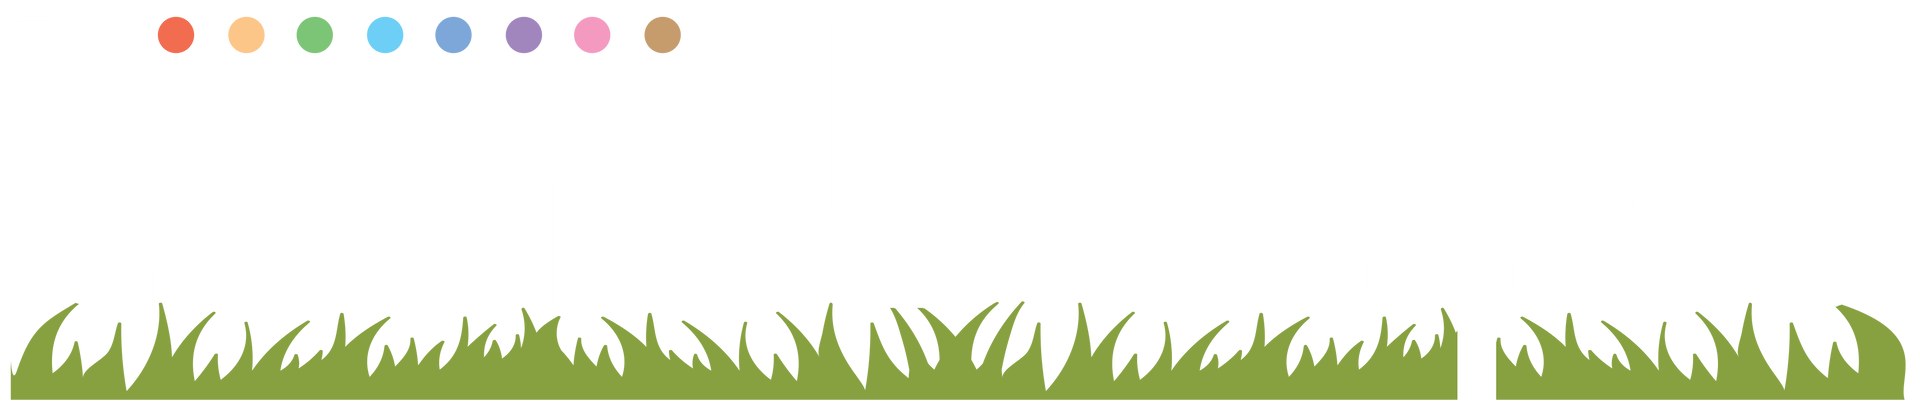 Landscape Business Course